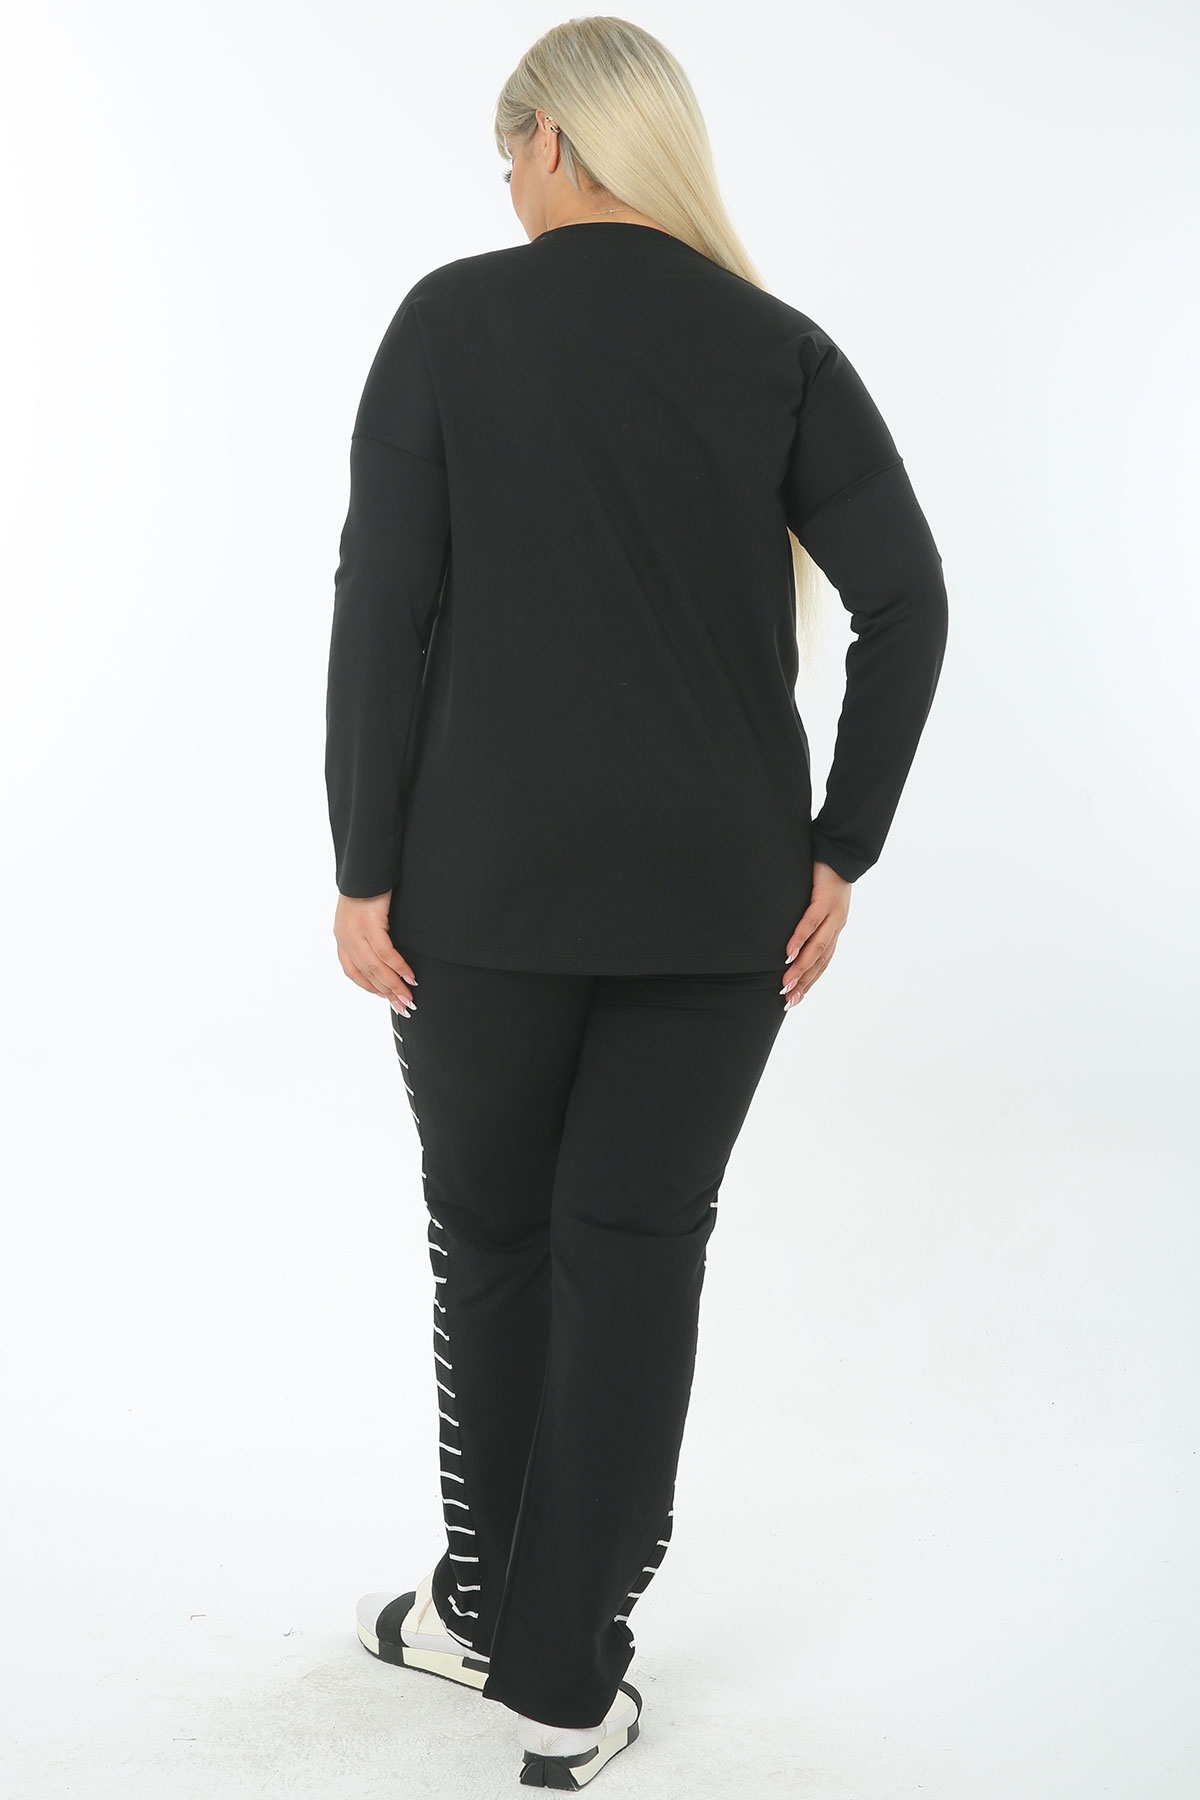 Kadın Büyük Beden Pamuklu Siyah Pantolon Yanı Ve Beli Çizgi Garnili Eşofman Takımı